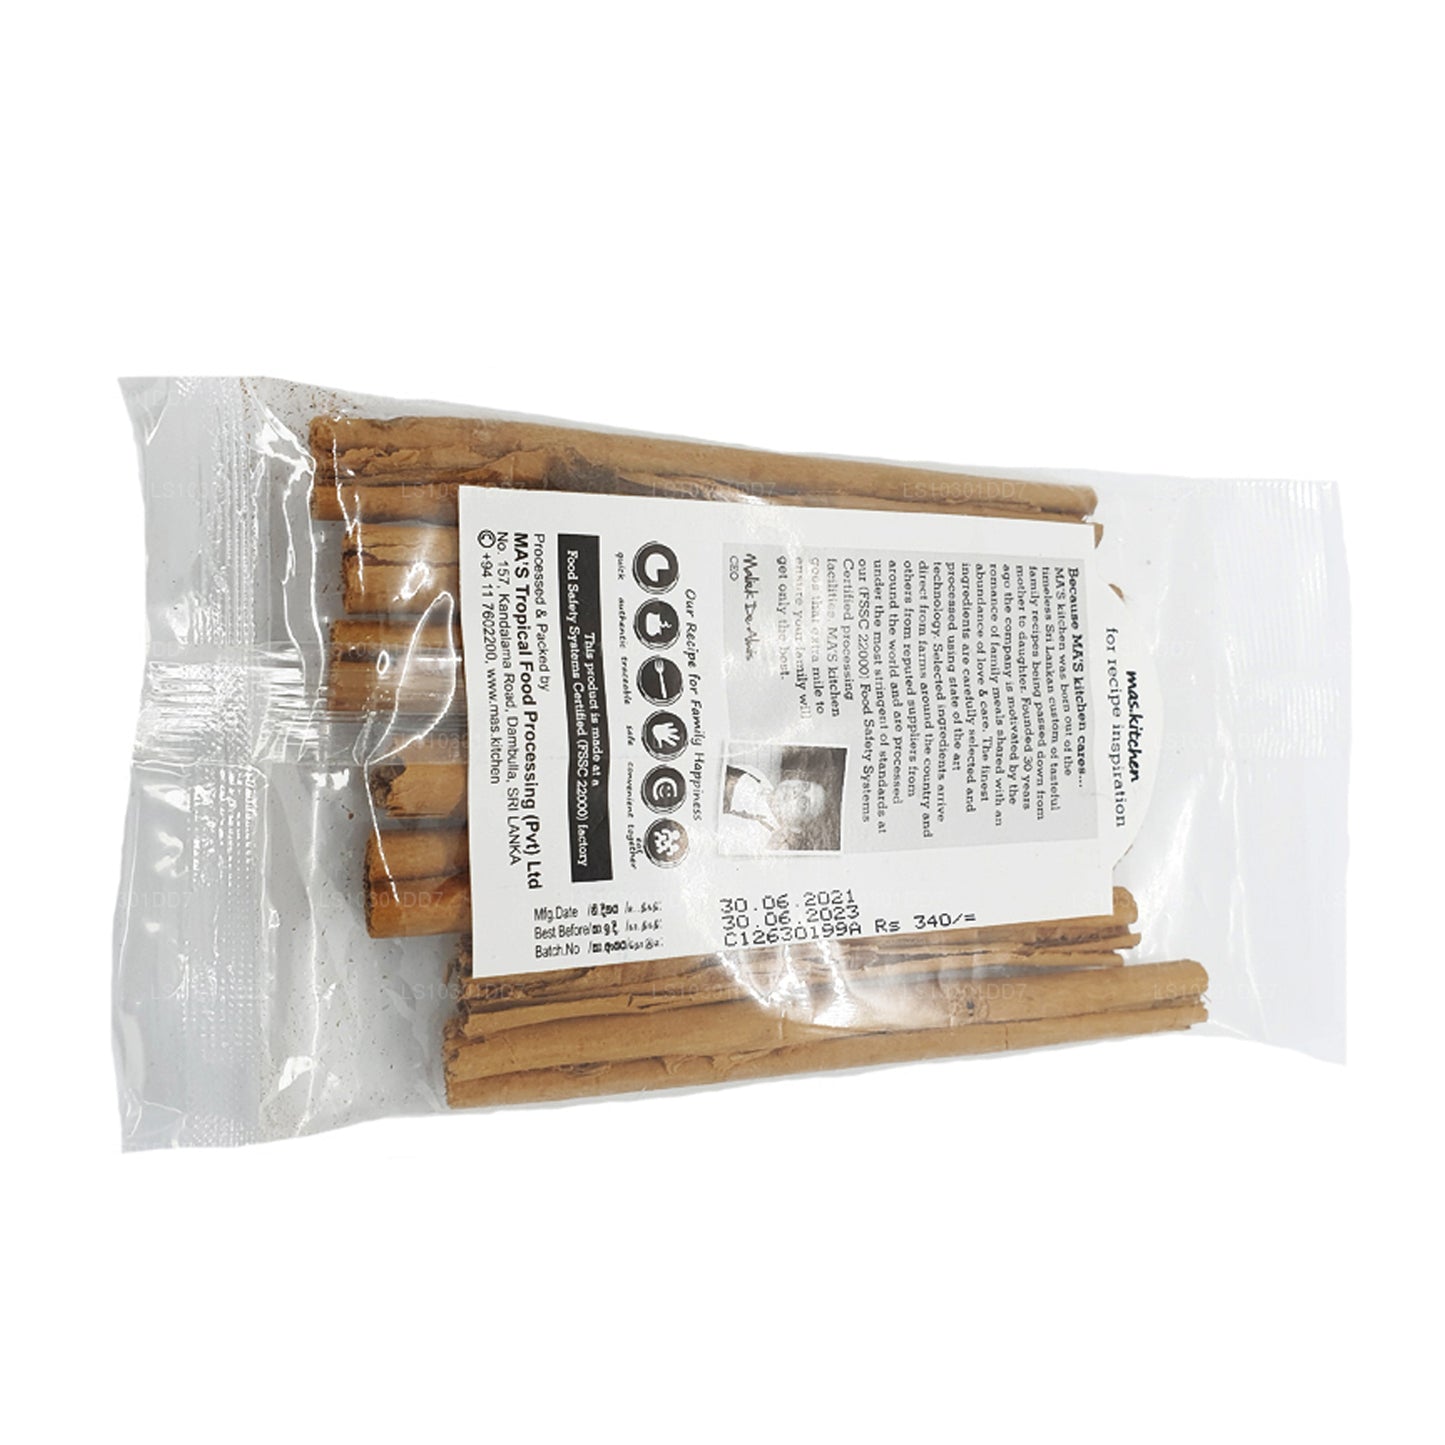 MA's Kitchen Cinnamon Sticks (50g)